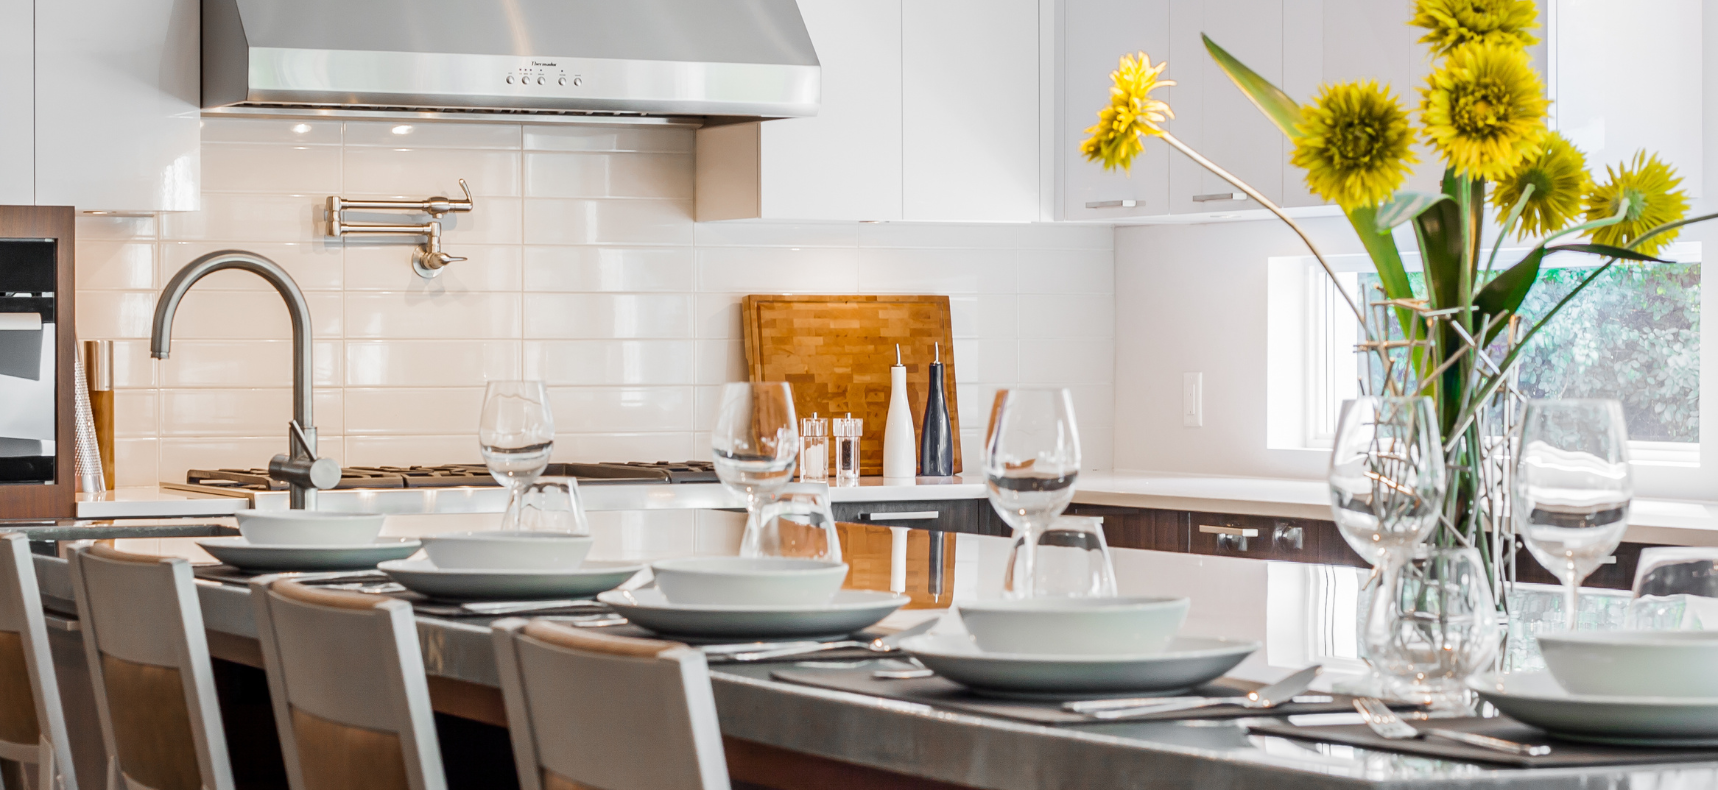 Design intérieur avec table à manger avec verres de vin et vase de fleurs jaunes